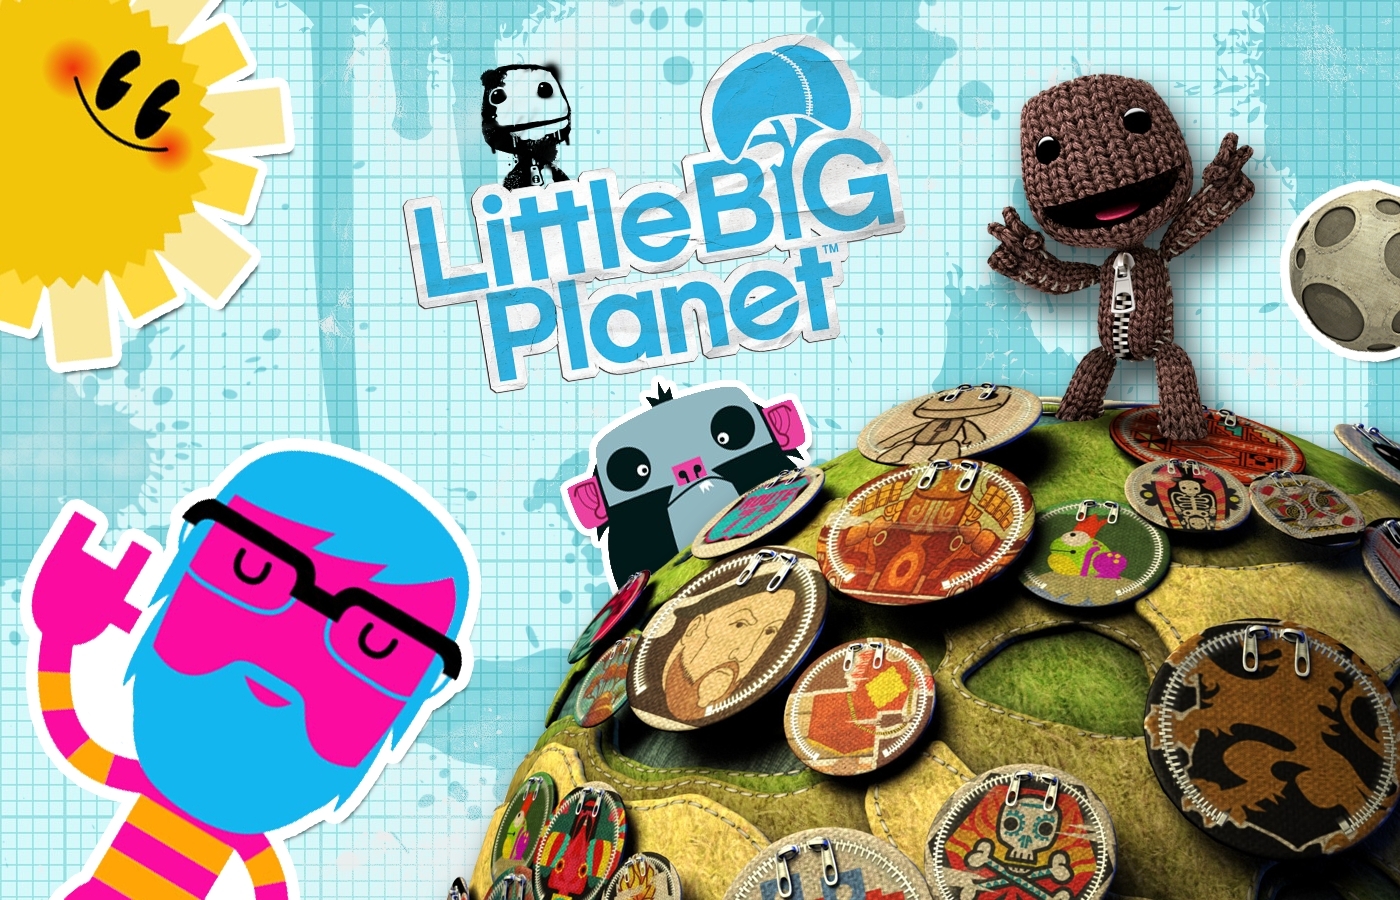 Little Big Planet Sackboy Wallpaper Hd 4440 - Little Big Planet 1 Background , HD Wallpaper & Backgrounds